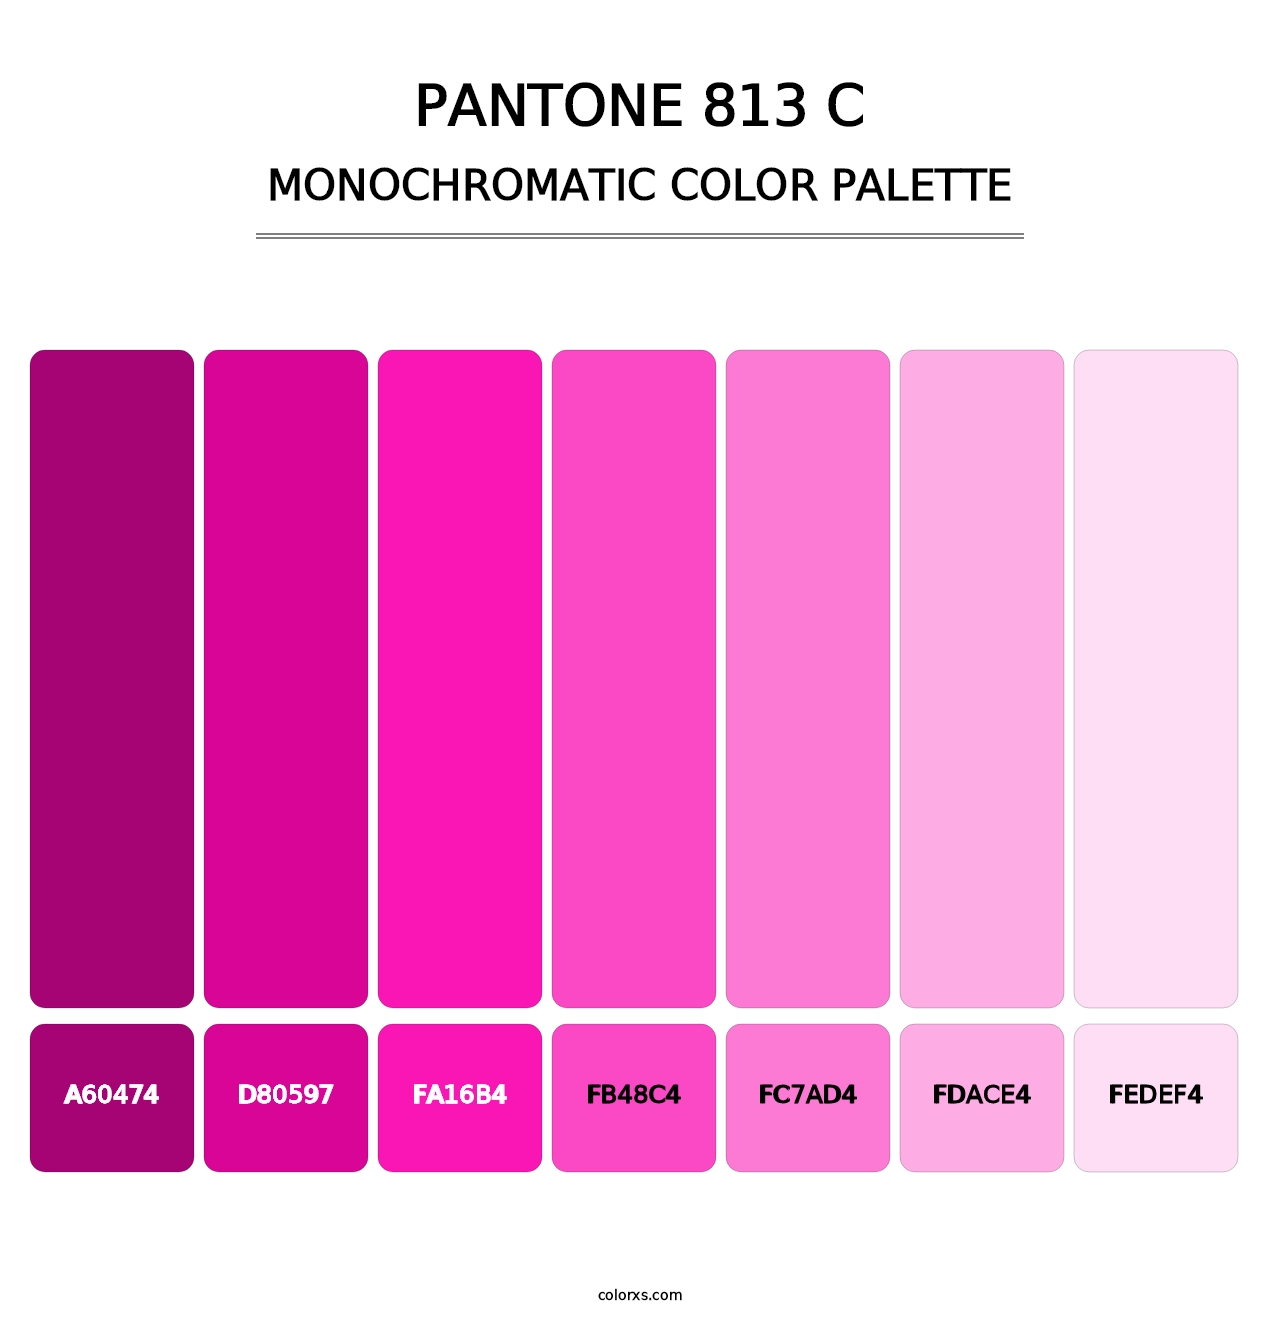 PANTONE 813 C - Monochromatic Color Palette